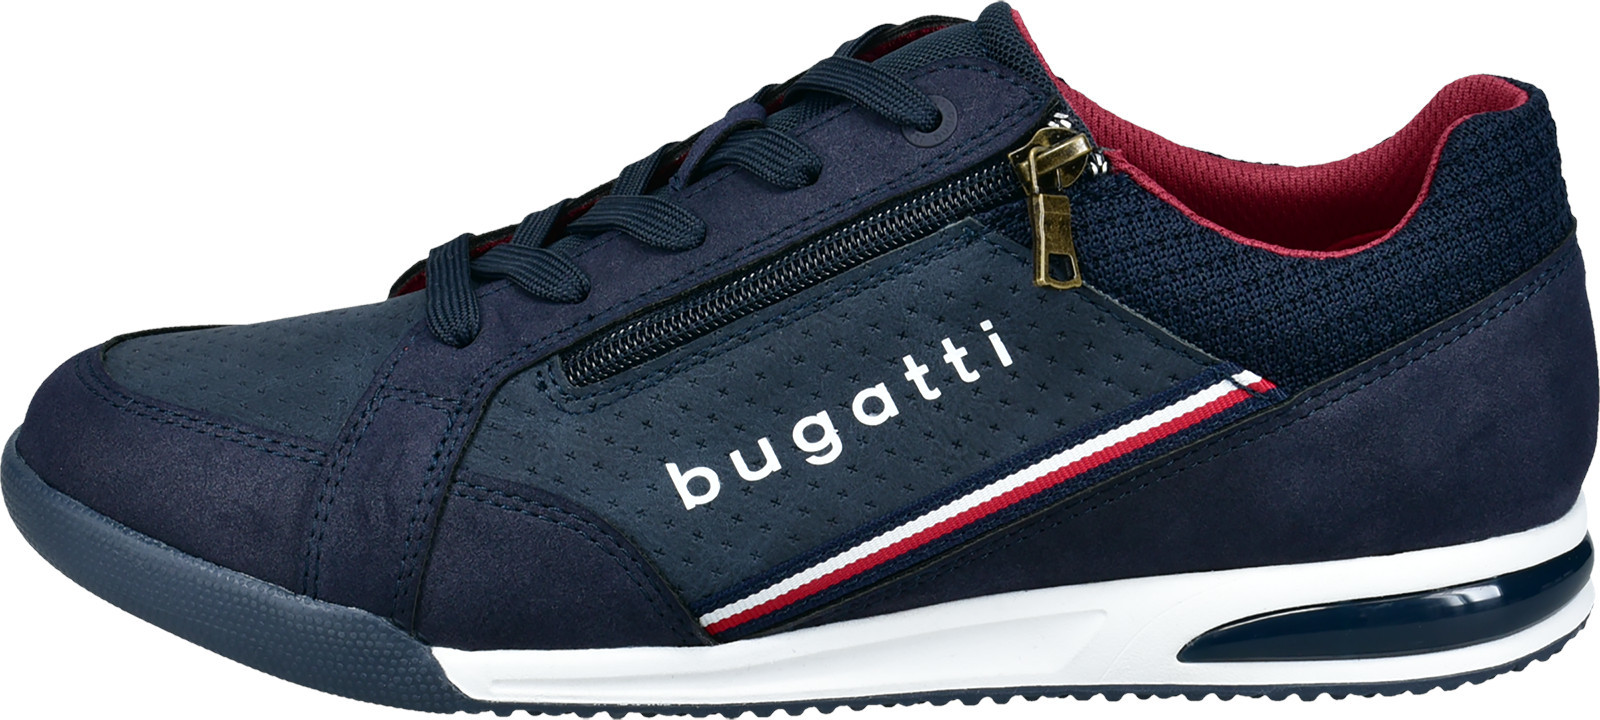 Bugatti Férfi sportcipő 321A38095900-4100 42